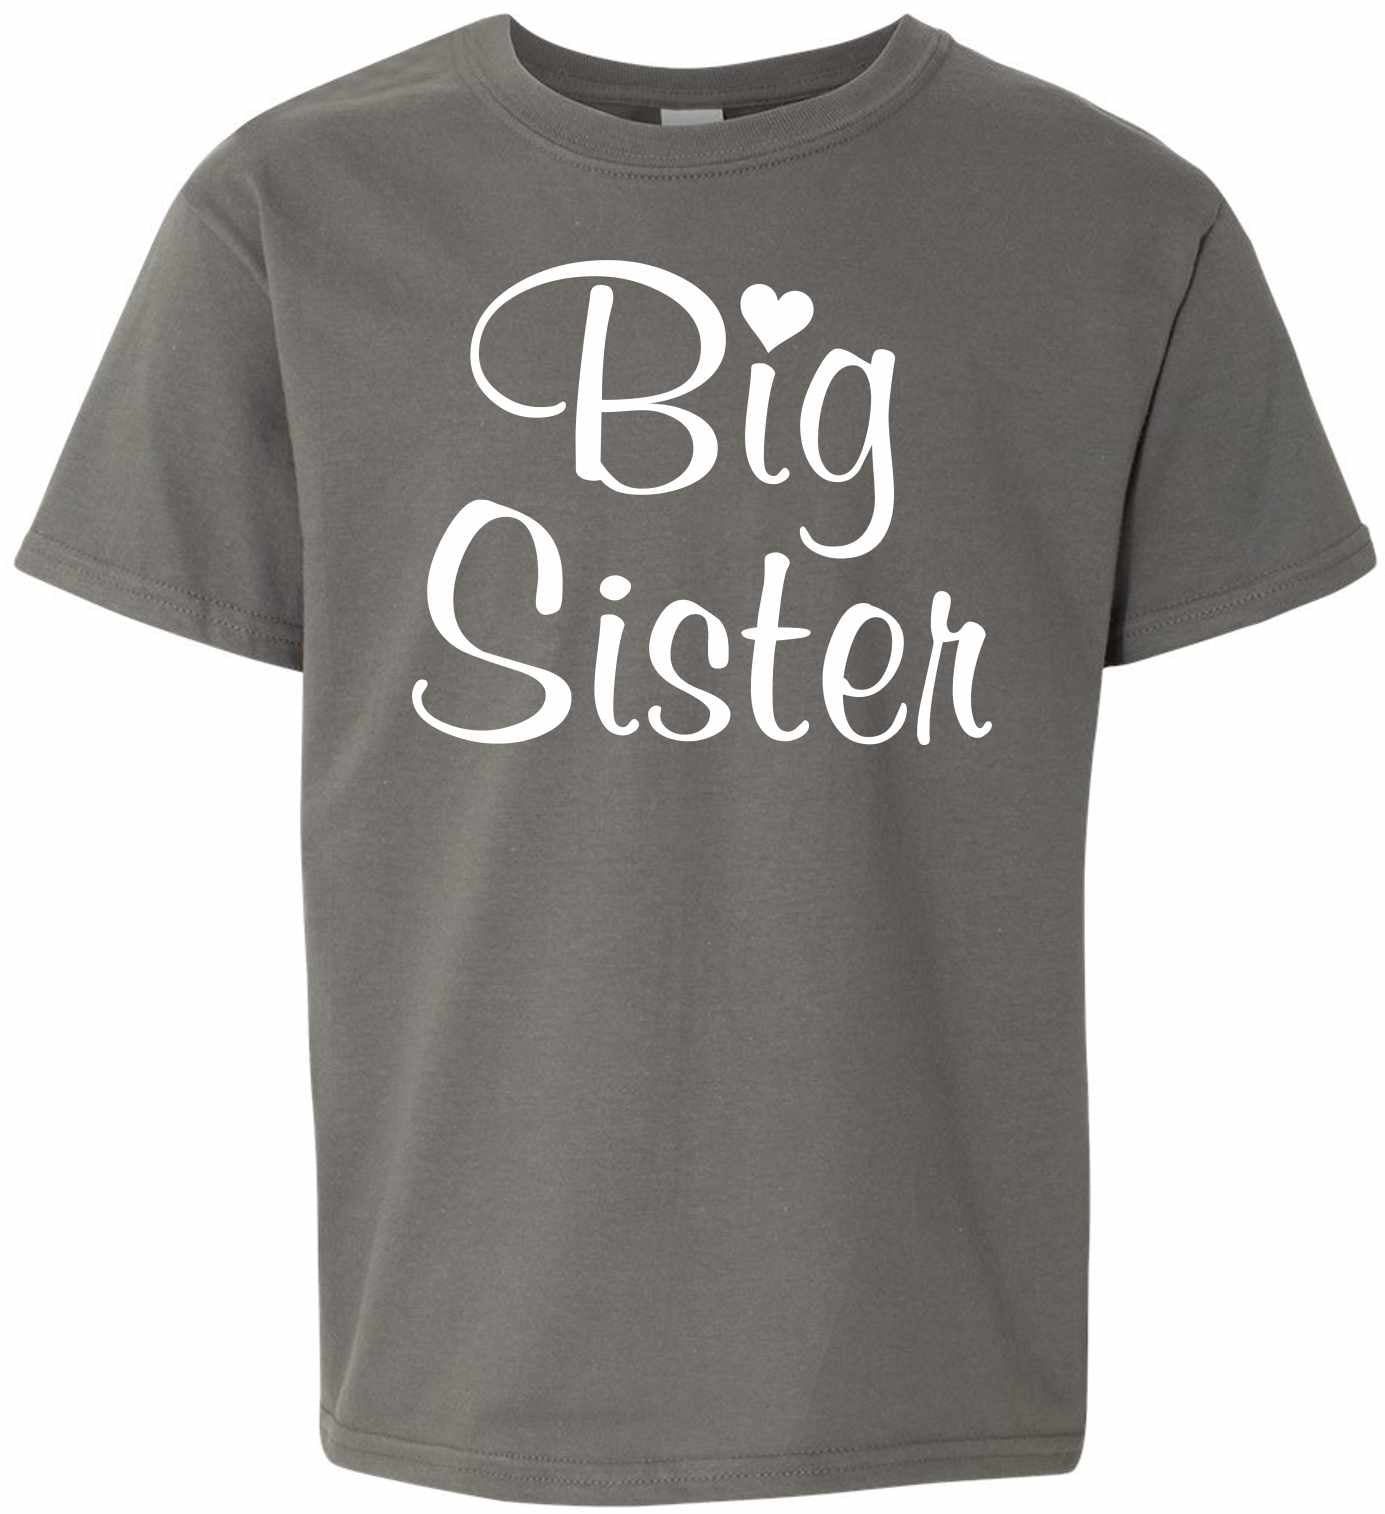 Big Sister on Kids T-Shirt (#1345-201)